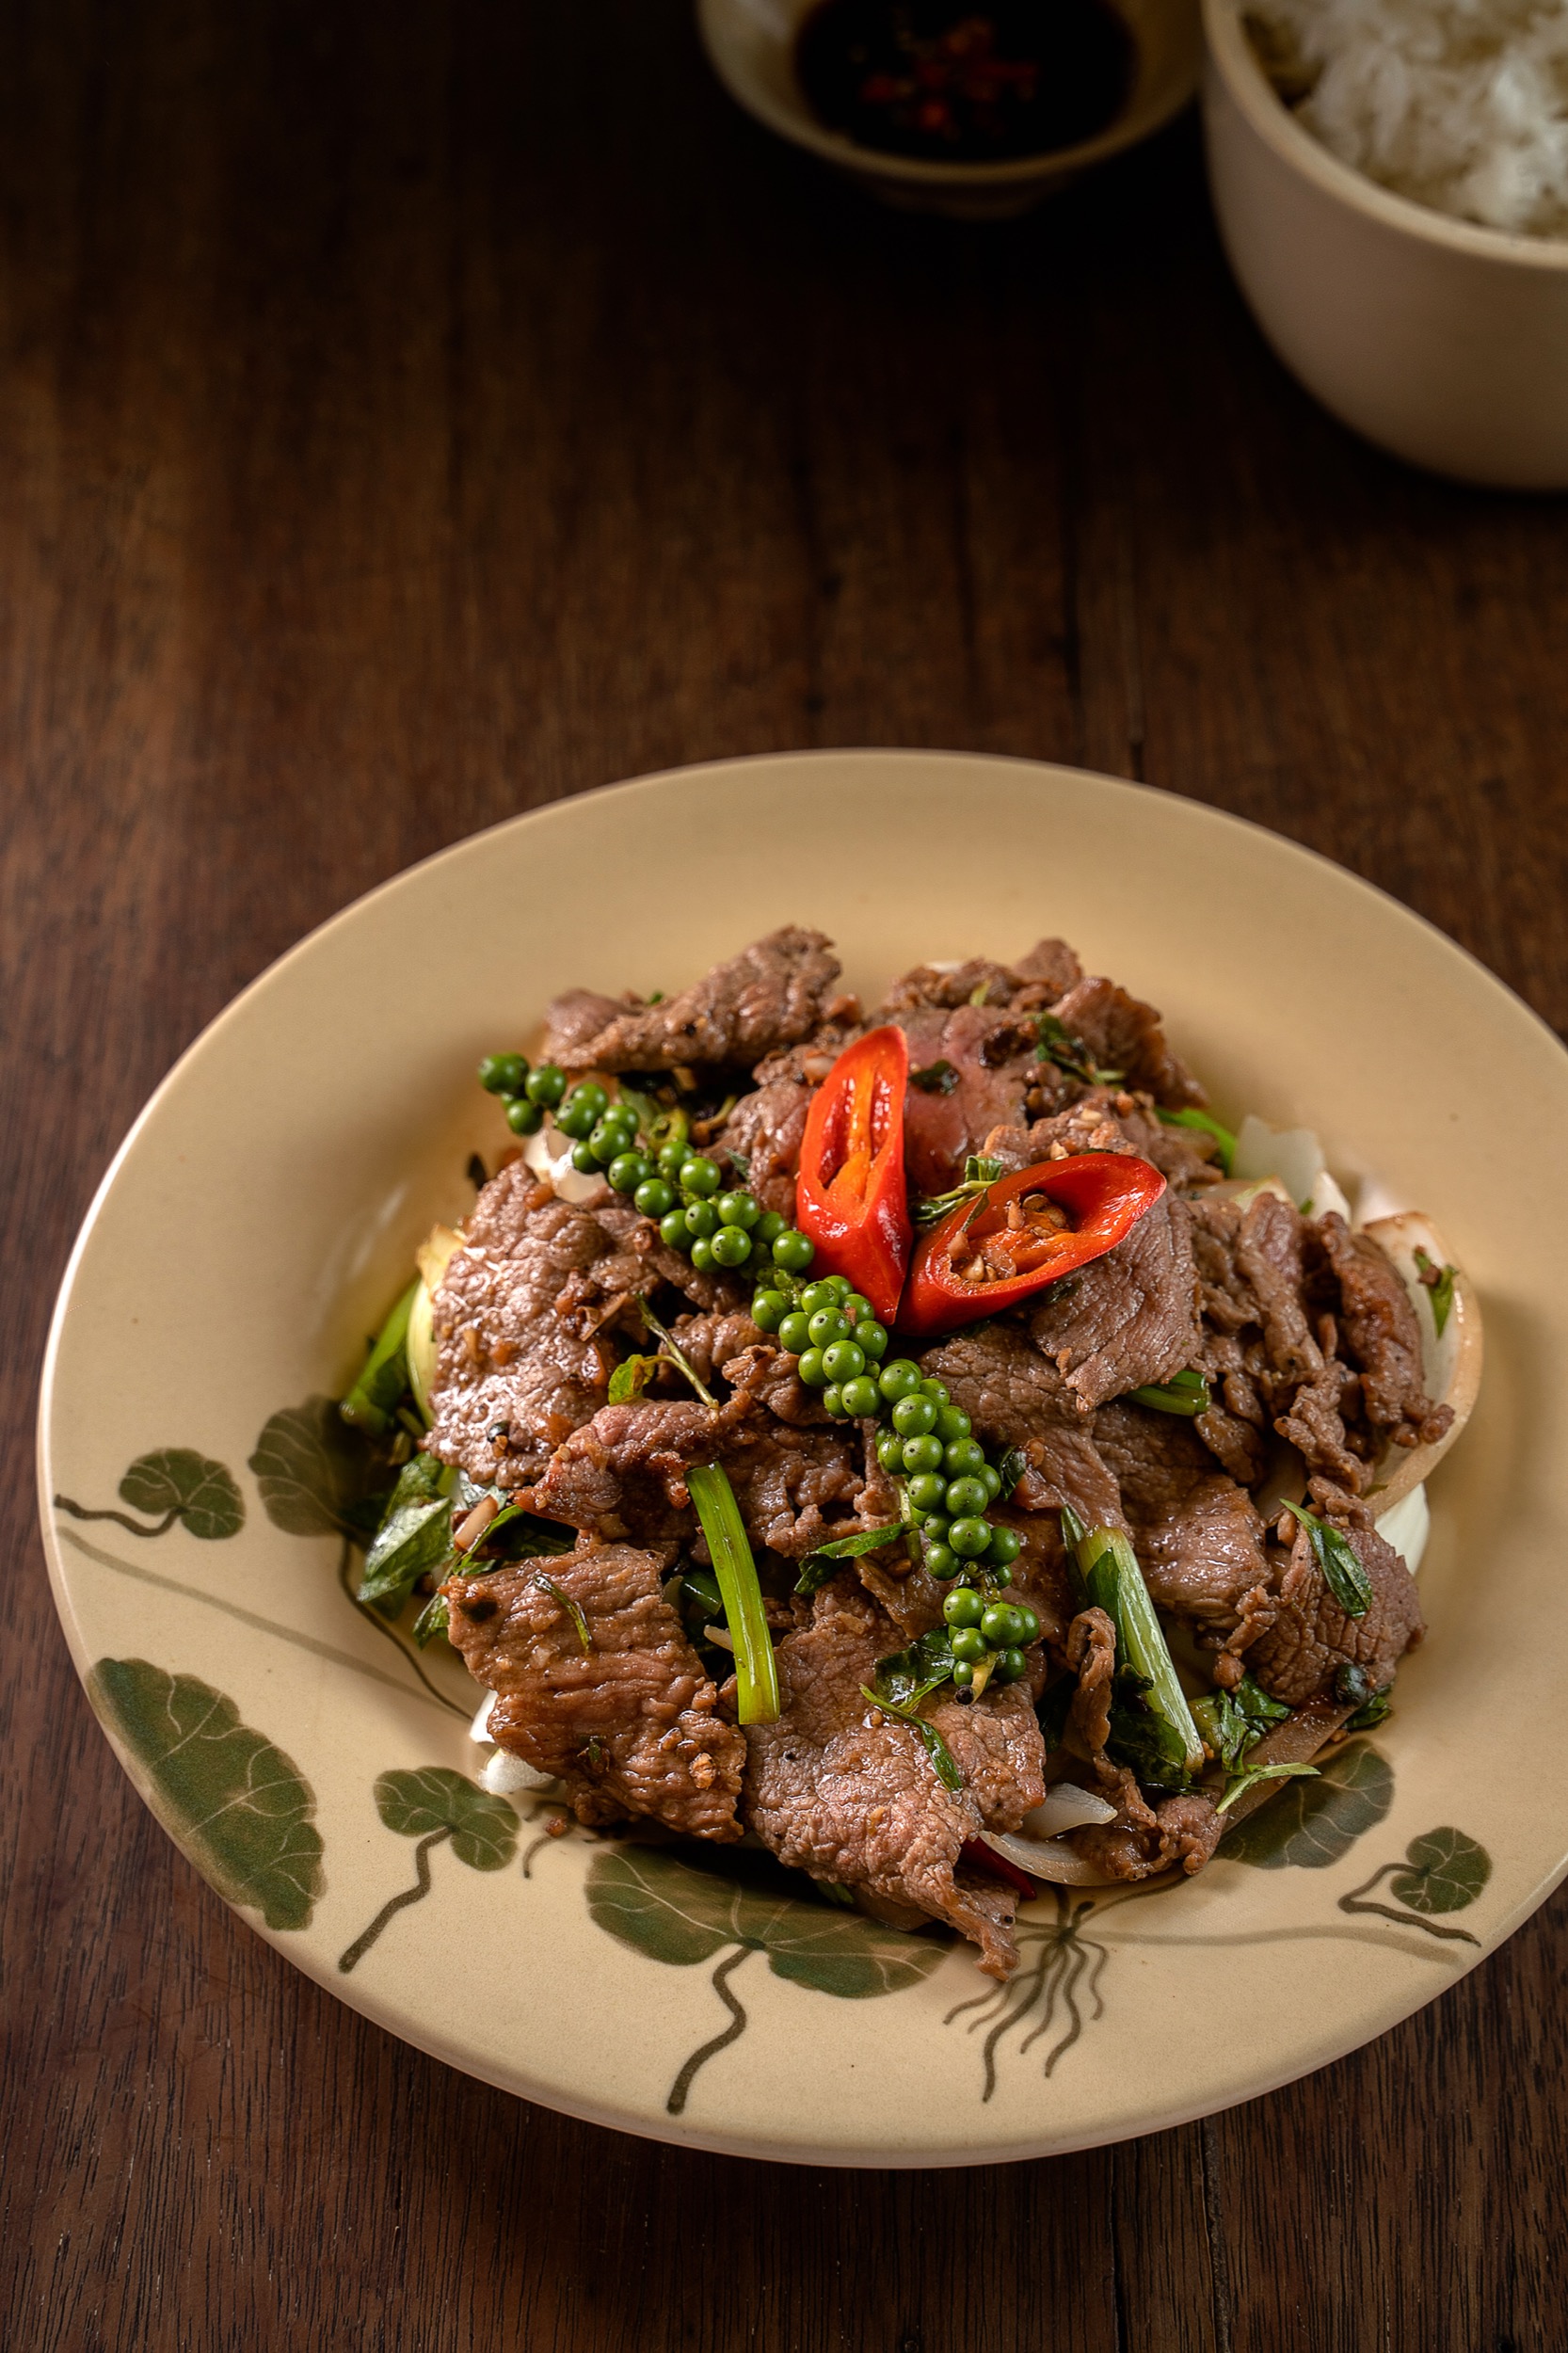 Gallery - Enriching Vietnamese Food Culture